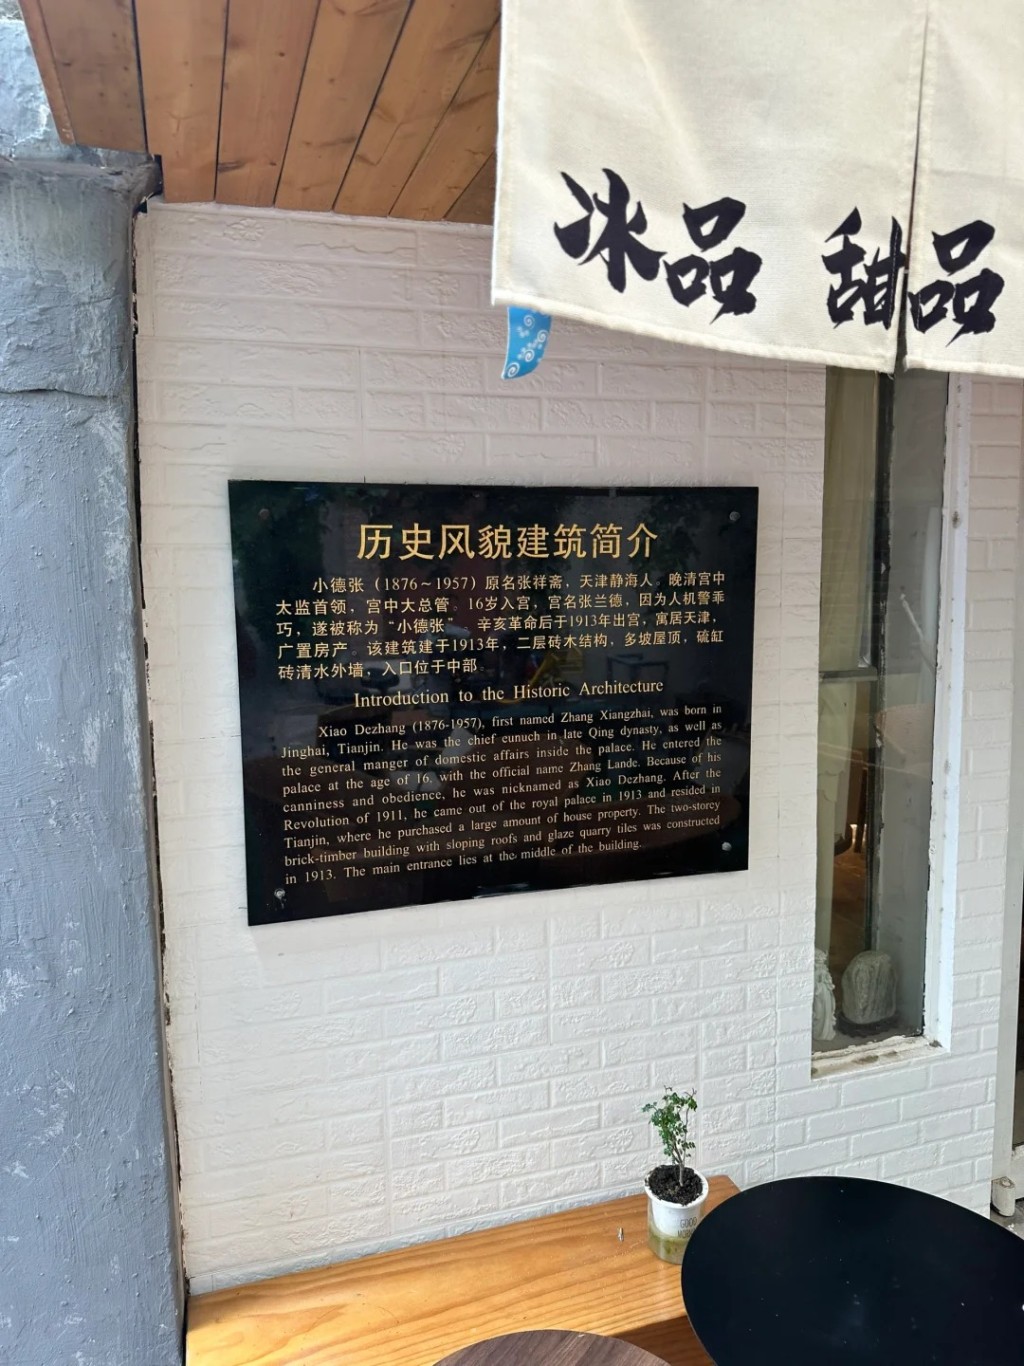 小德張人生最後階段居於天津金林村四號的洋樓。小紅書